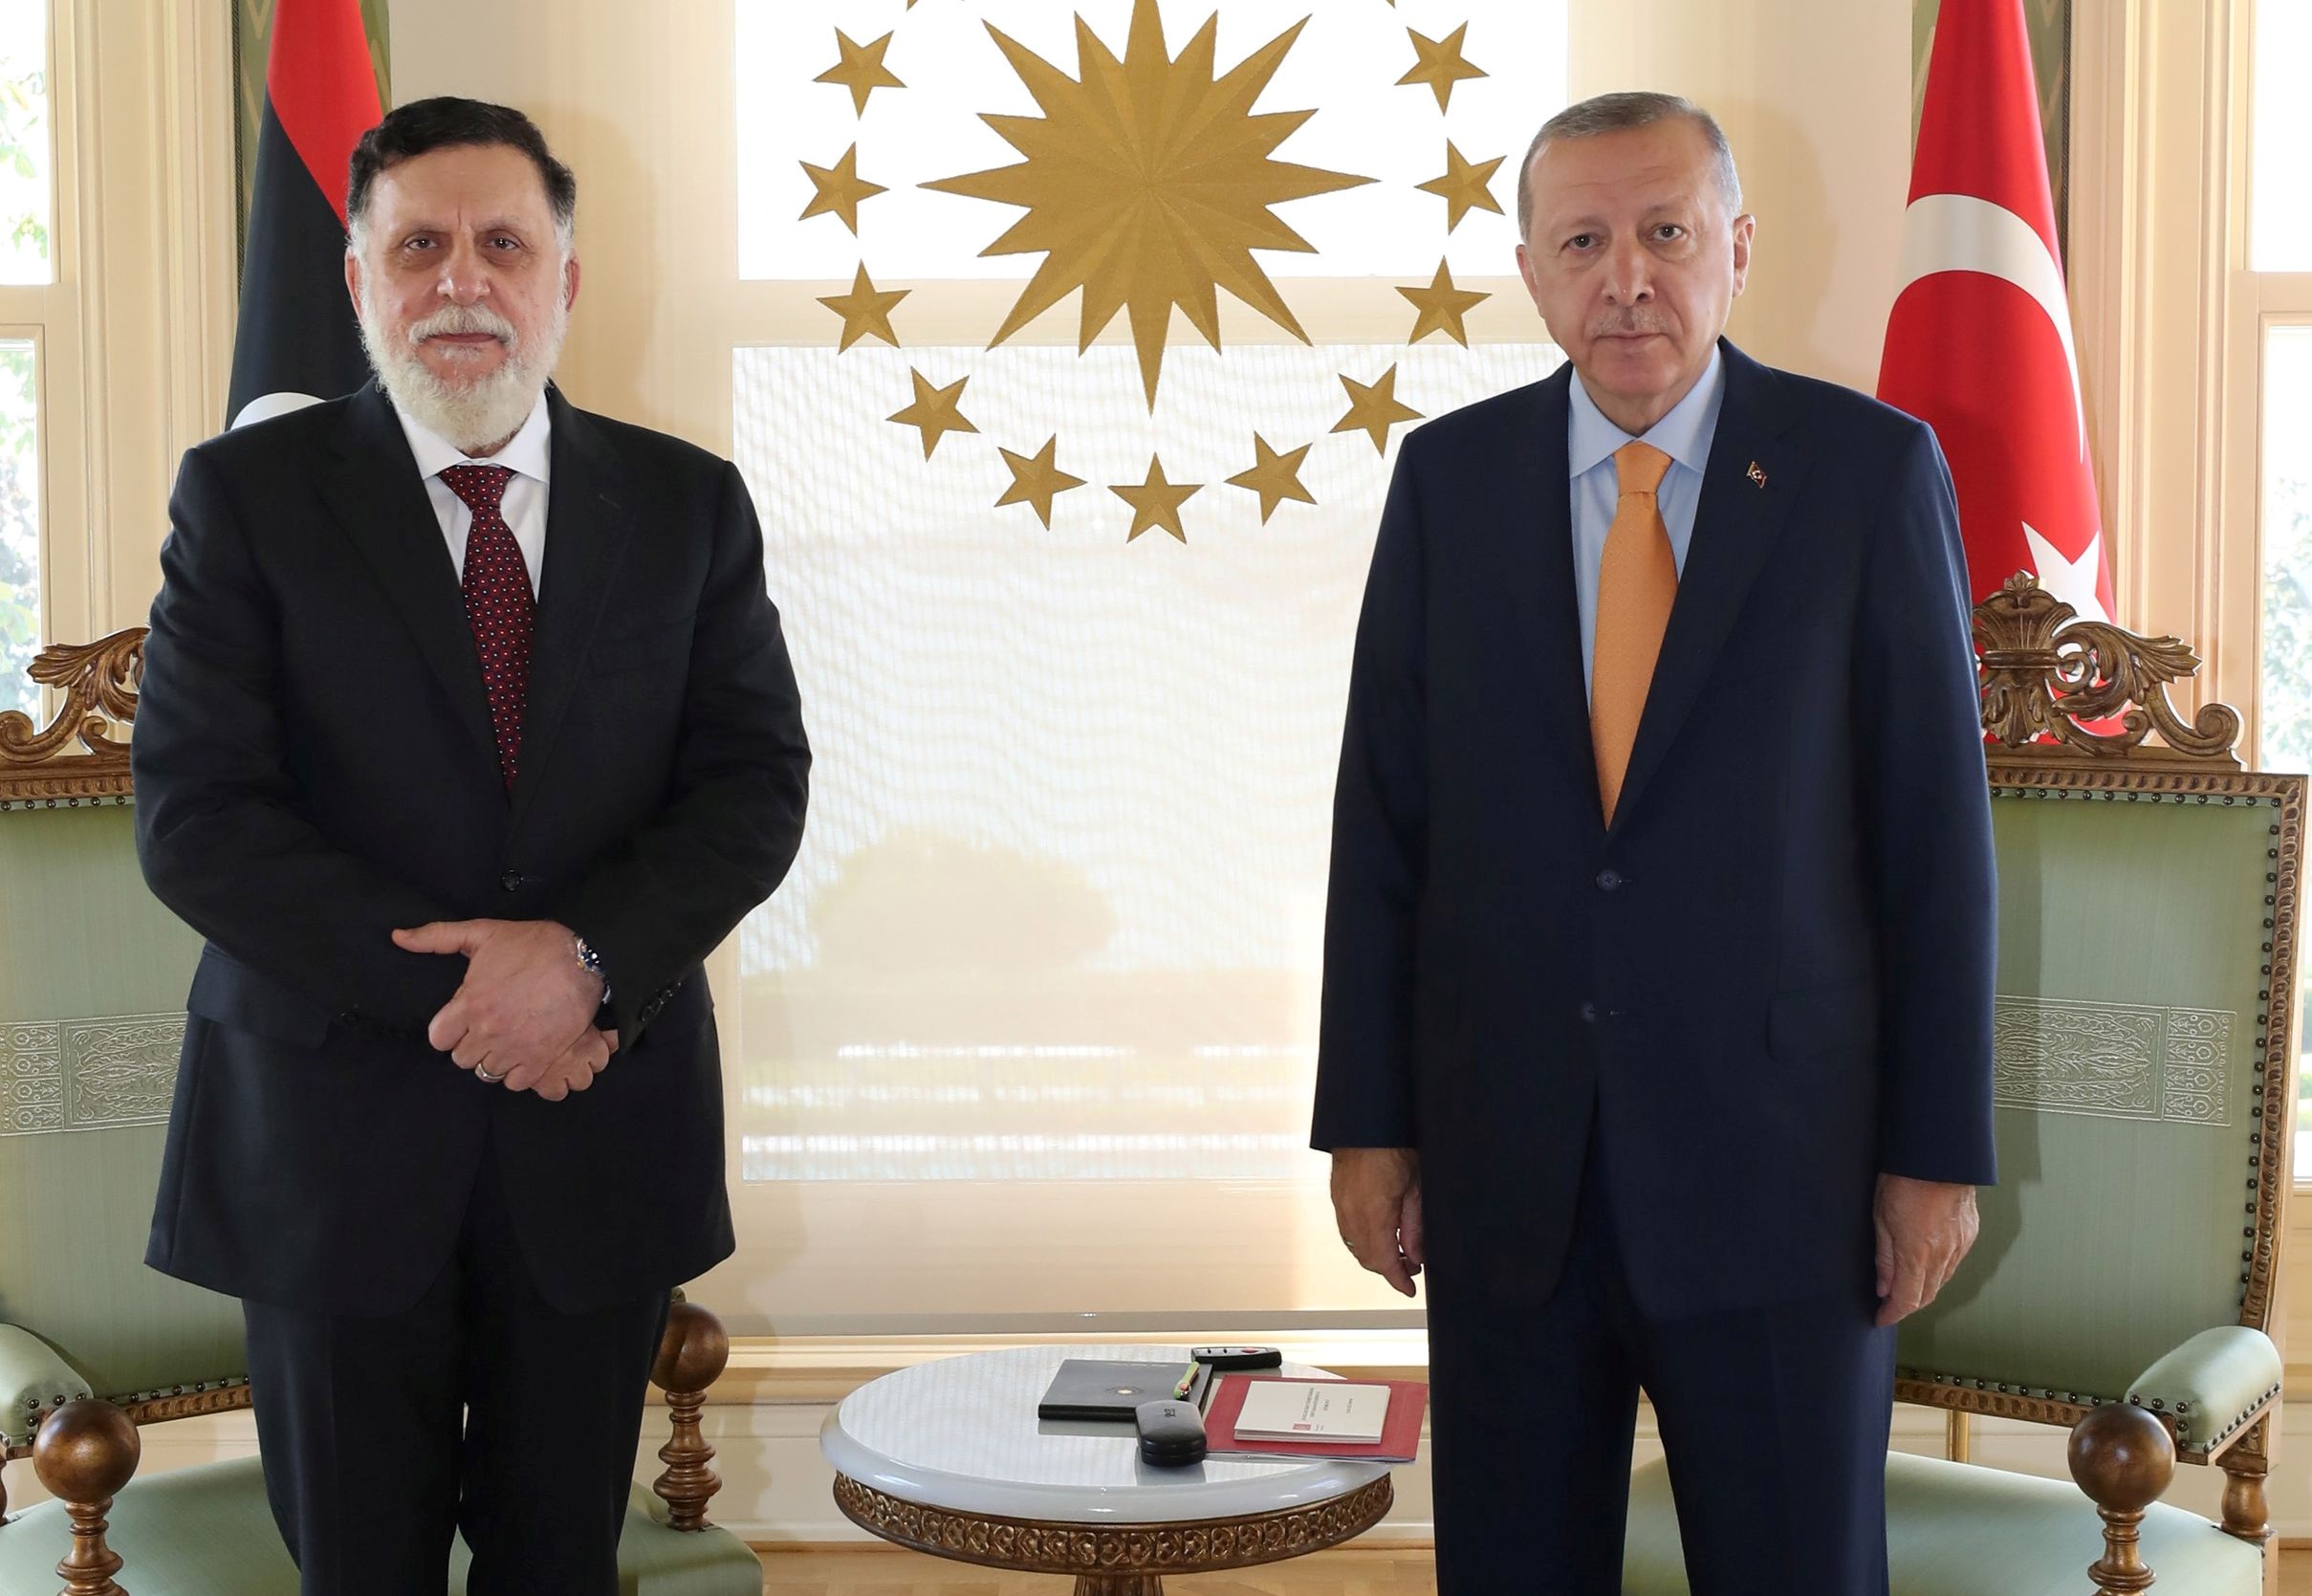 Τουρκία: Ο Ερντογάν ανανέωσε την υποστήριξή του στην κυβέρνηση Σάρατζ